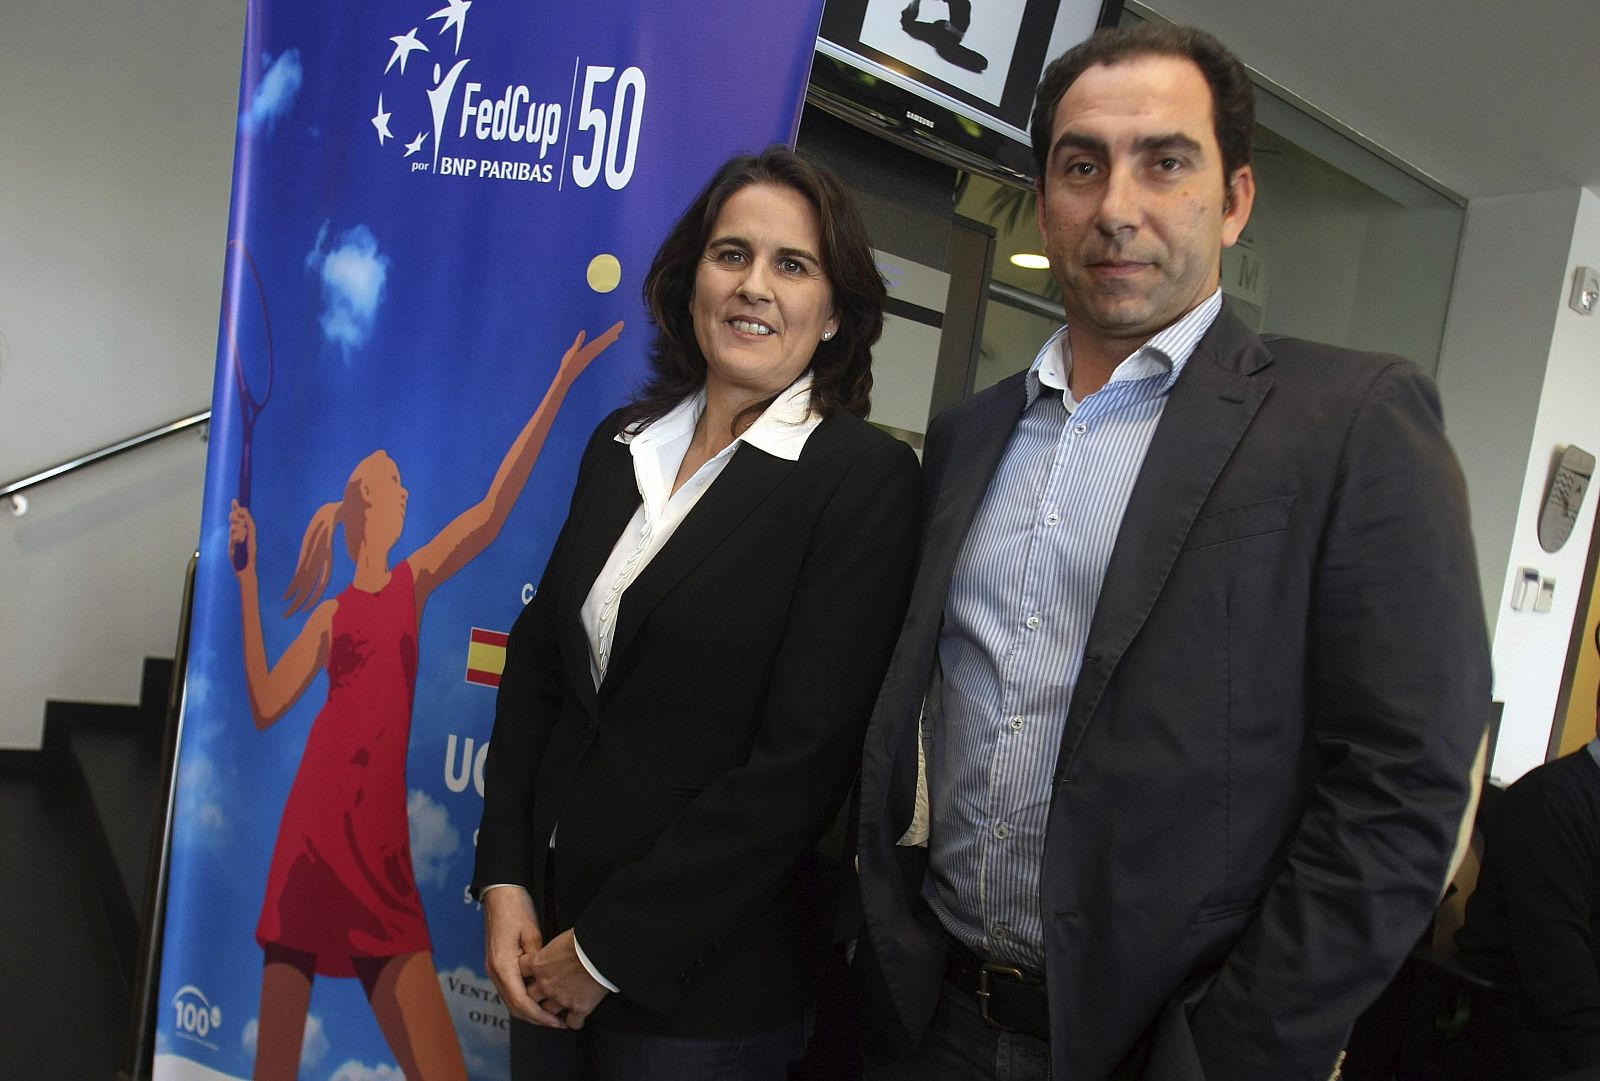 La capitana del equipo de Copa Federación, Conchita Martínez, y el director deportivo de la RFET, Albert Costa